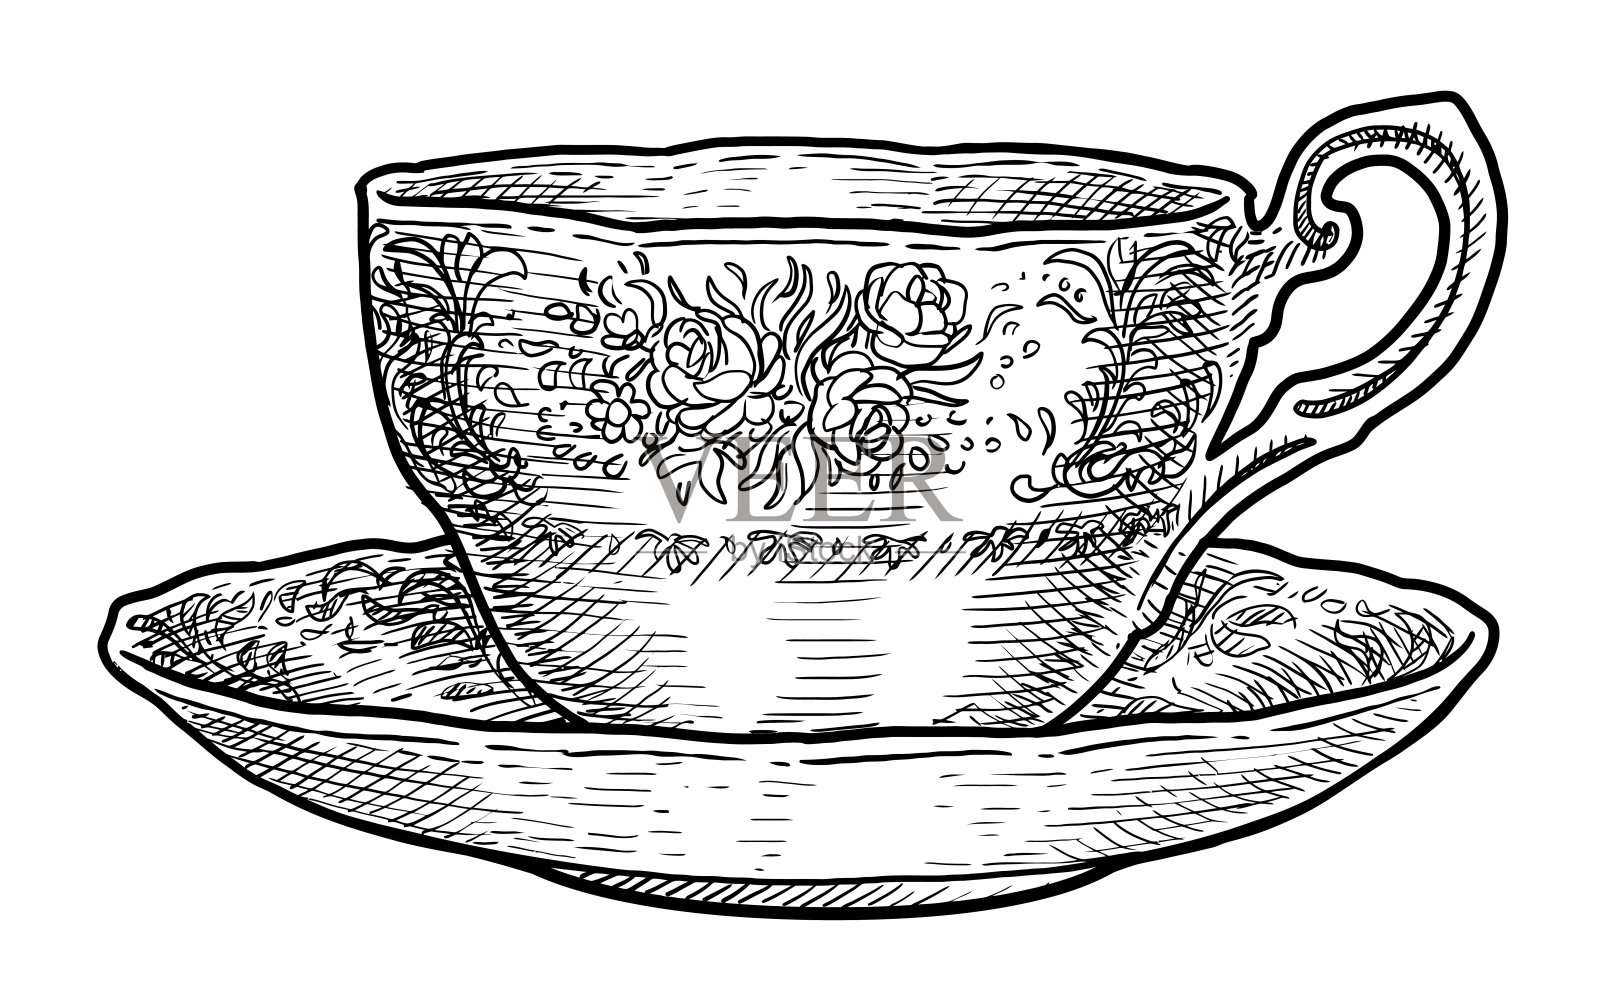 古董瓷杯茶插图、绘画、雕刻、水墨、线条艺术、矢量插画图片素材